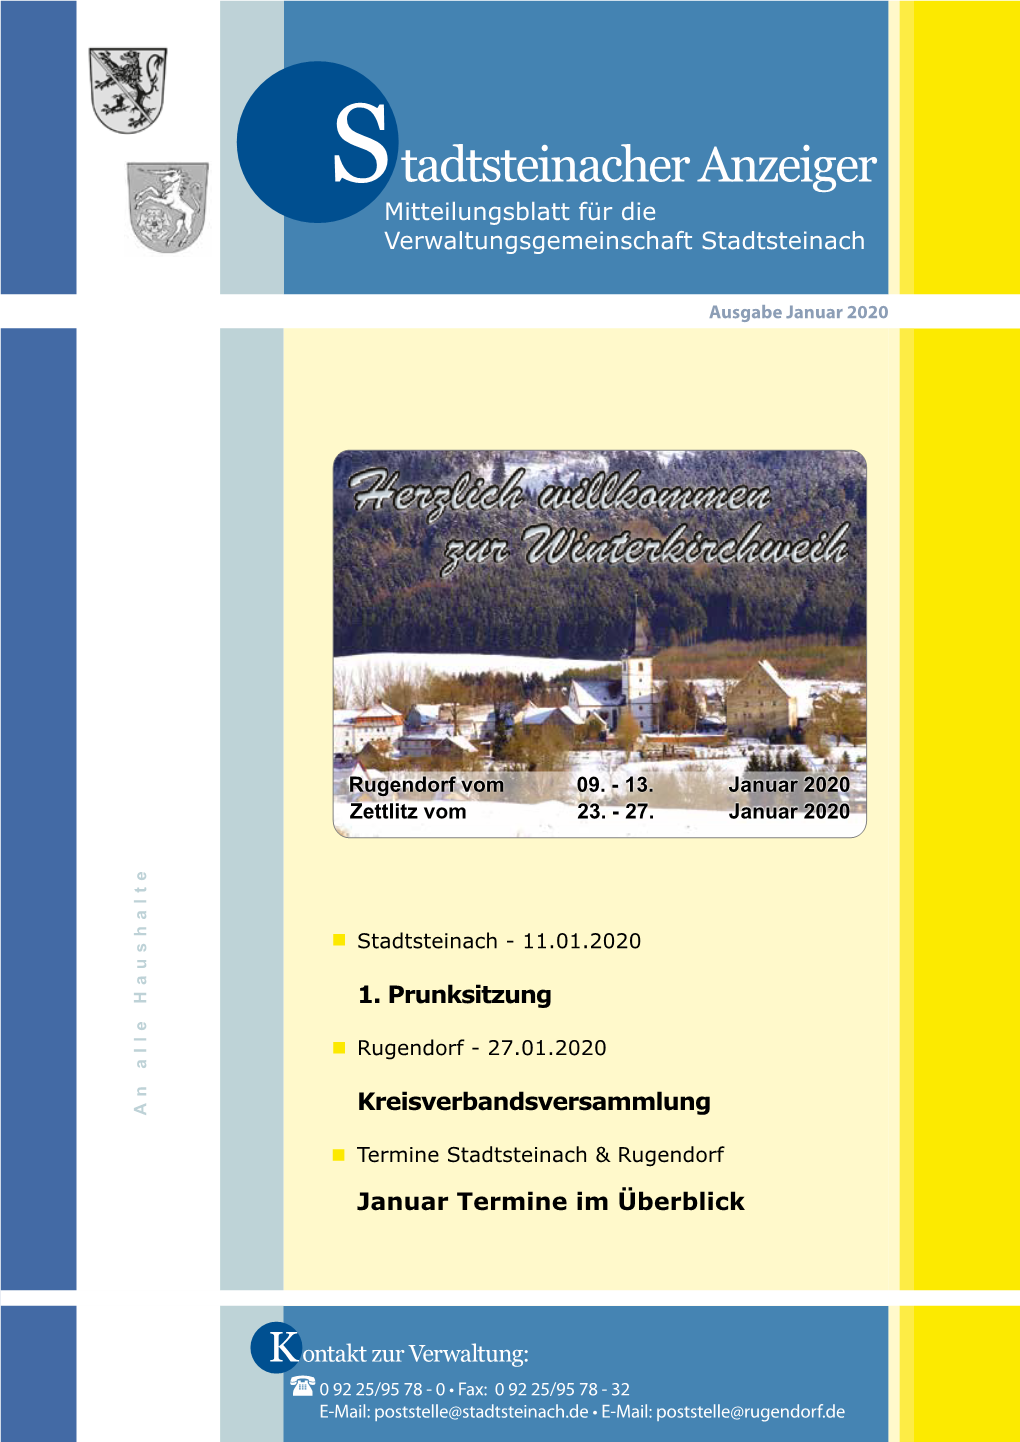 Tadtsteinacher Anzeiger Mitteilungsblatt Für Die Verwaltungsgemeinschaft Stadtsteinach